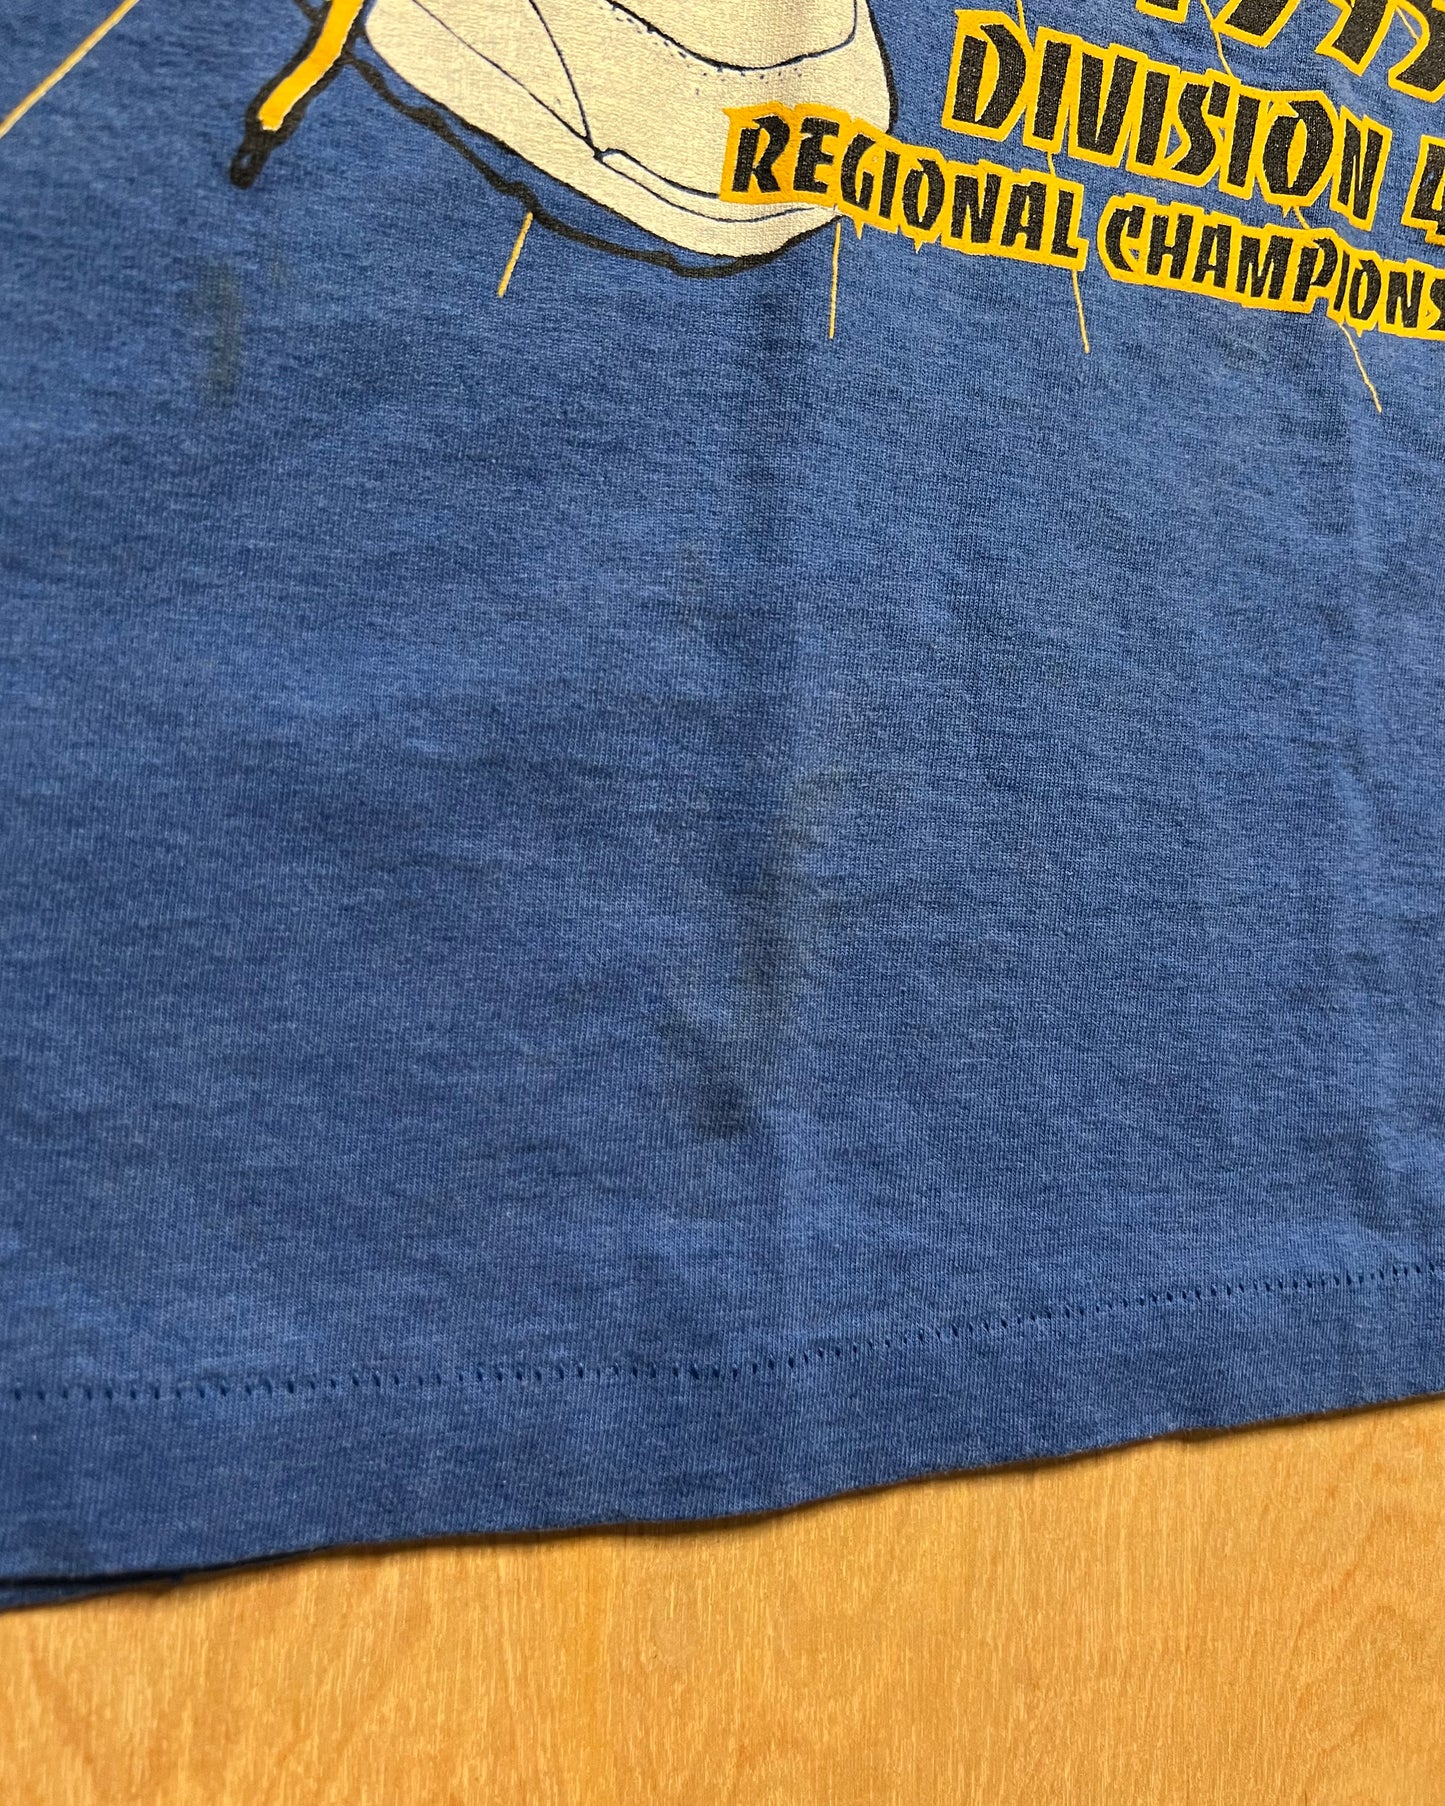 1995 Plum City Basketball Single Stitch T-Shirt